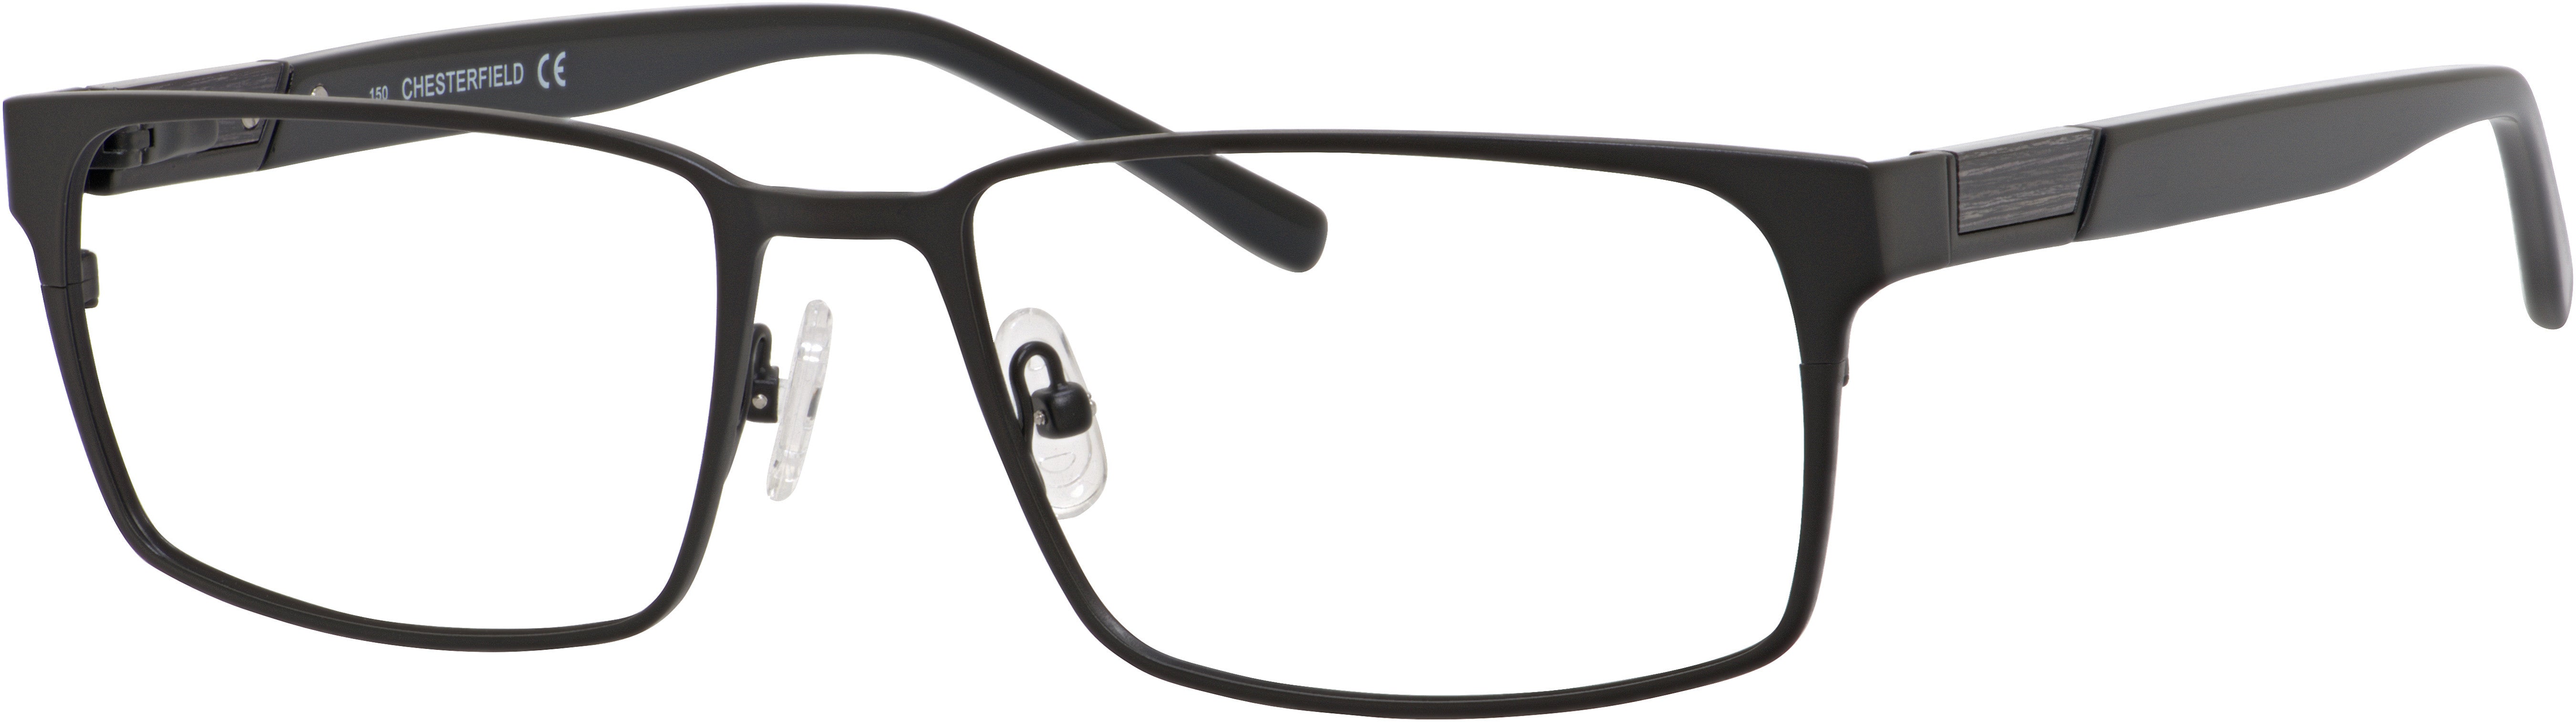  Chesterfield 42 XL Rectangular Eyeglasses 0003-0003  Matte Black (00 Demo Lens)